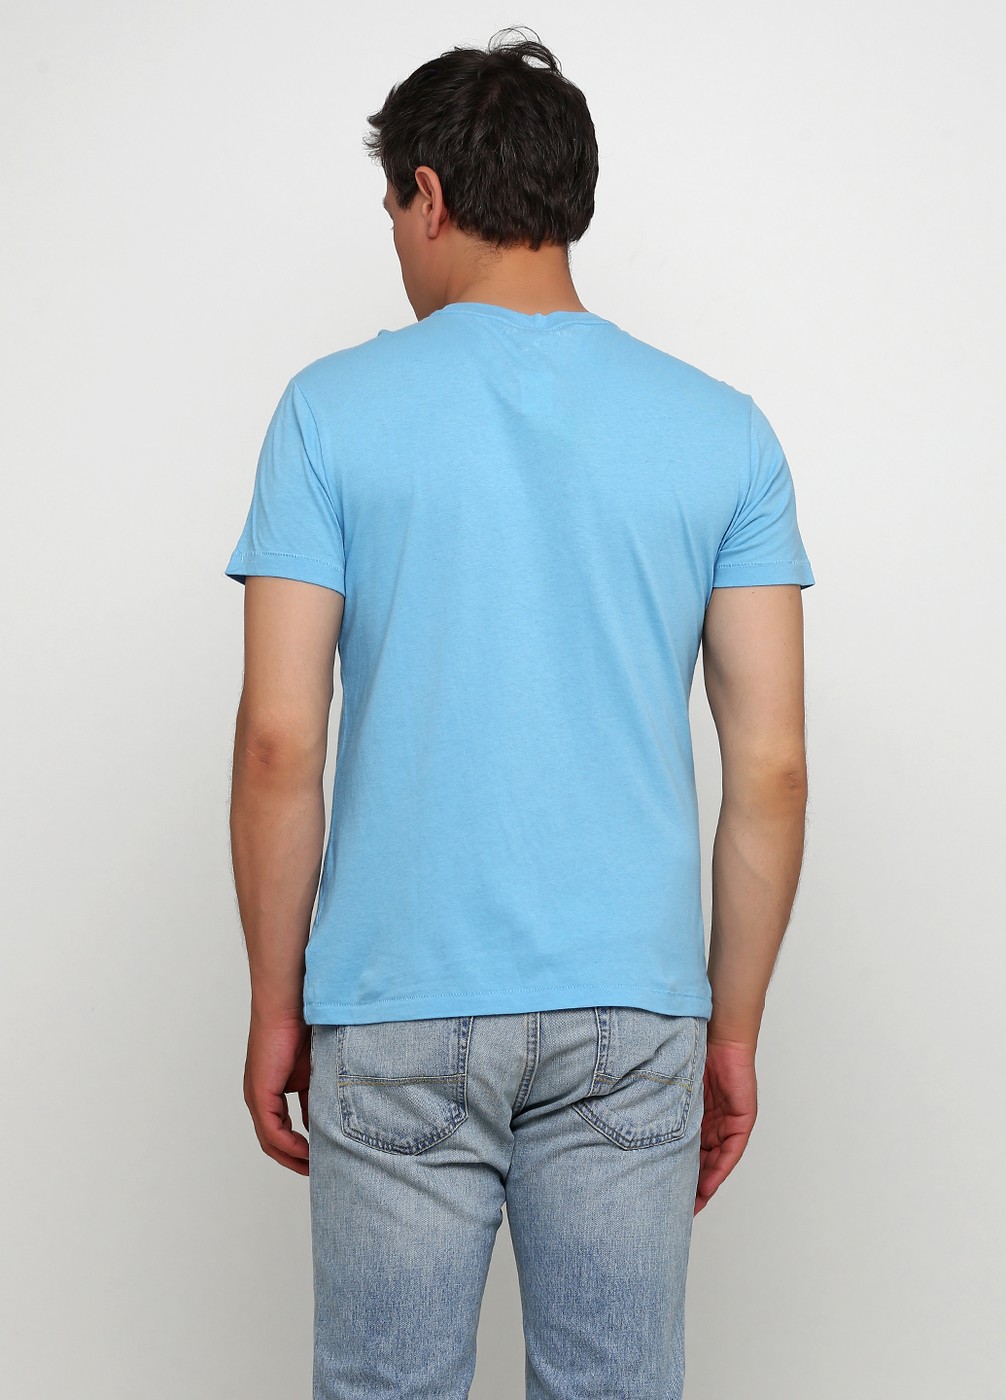 Голубая футболка - мужская футболка Aeropostale, M, M